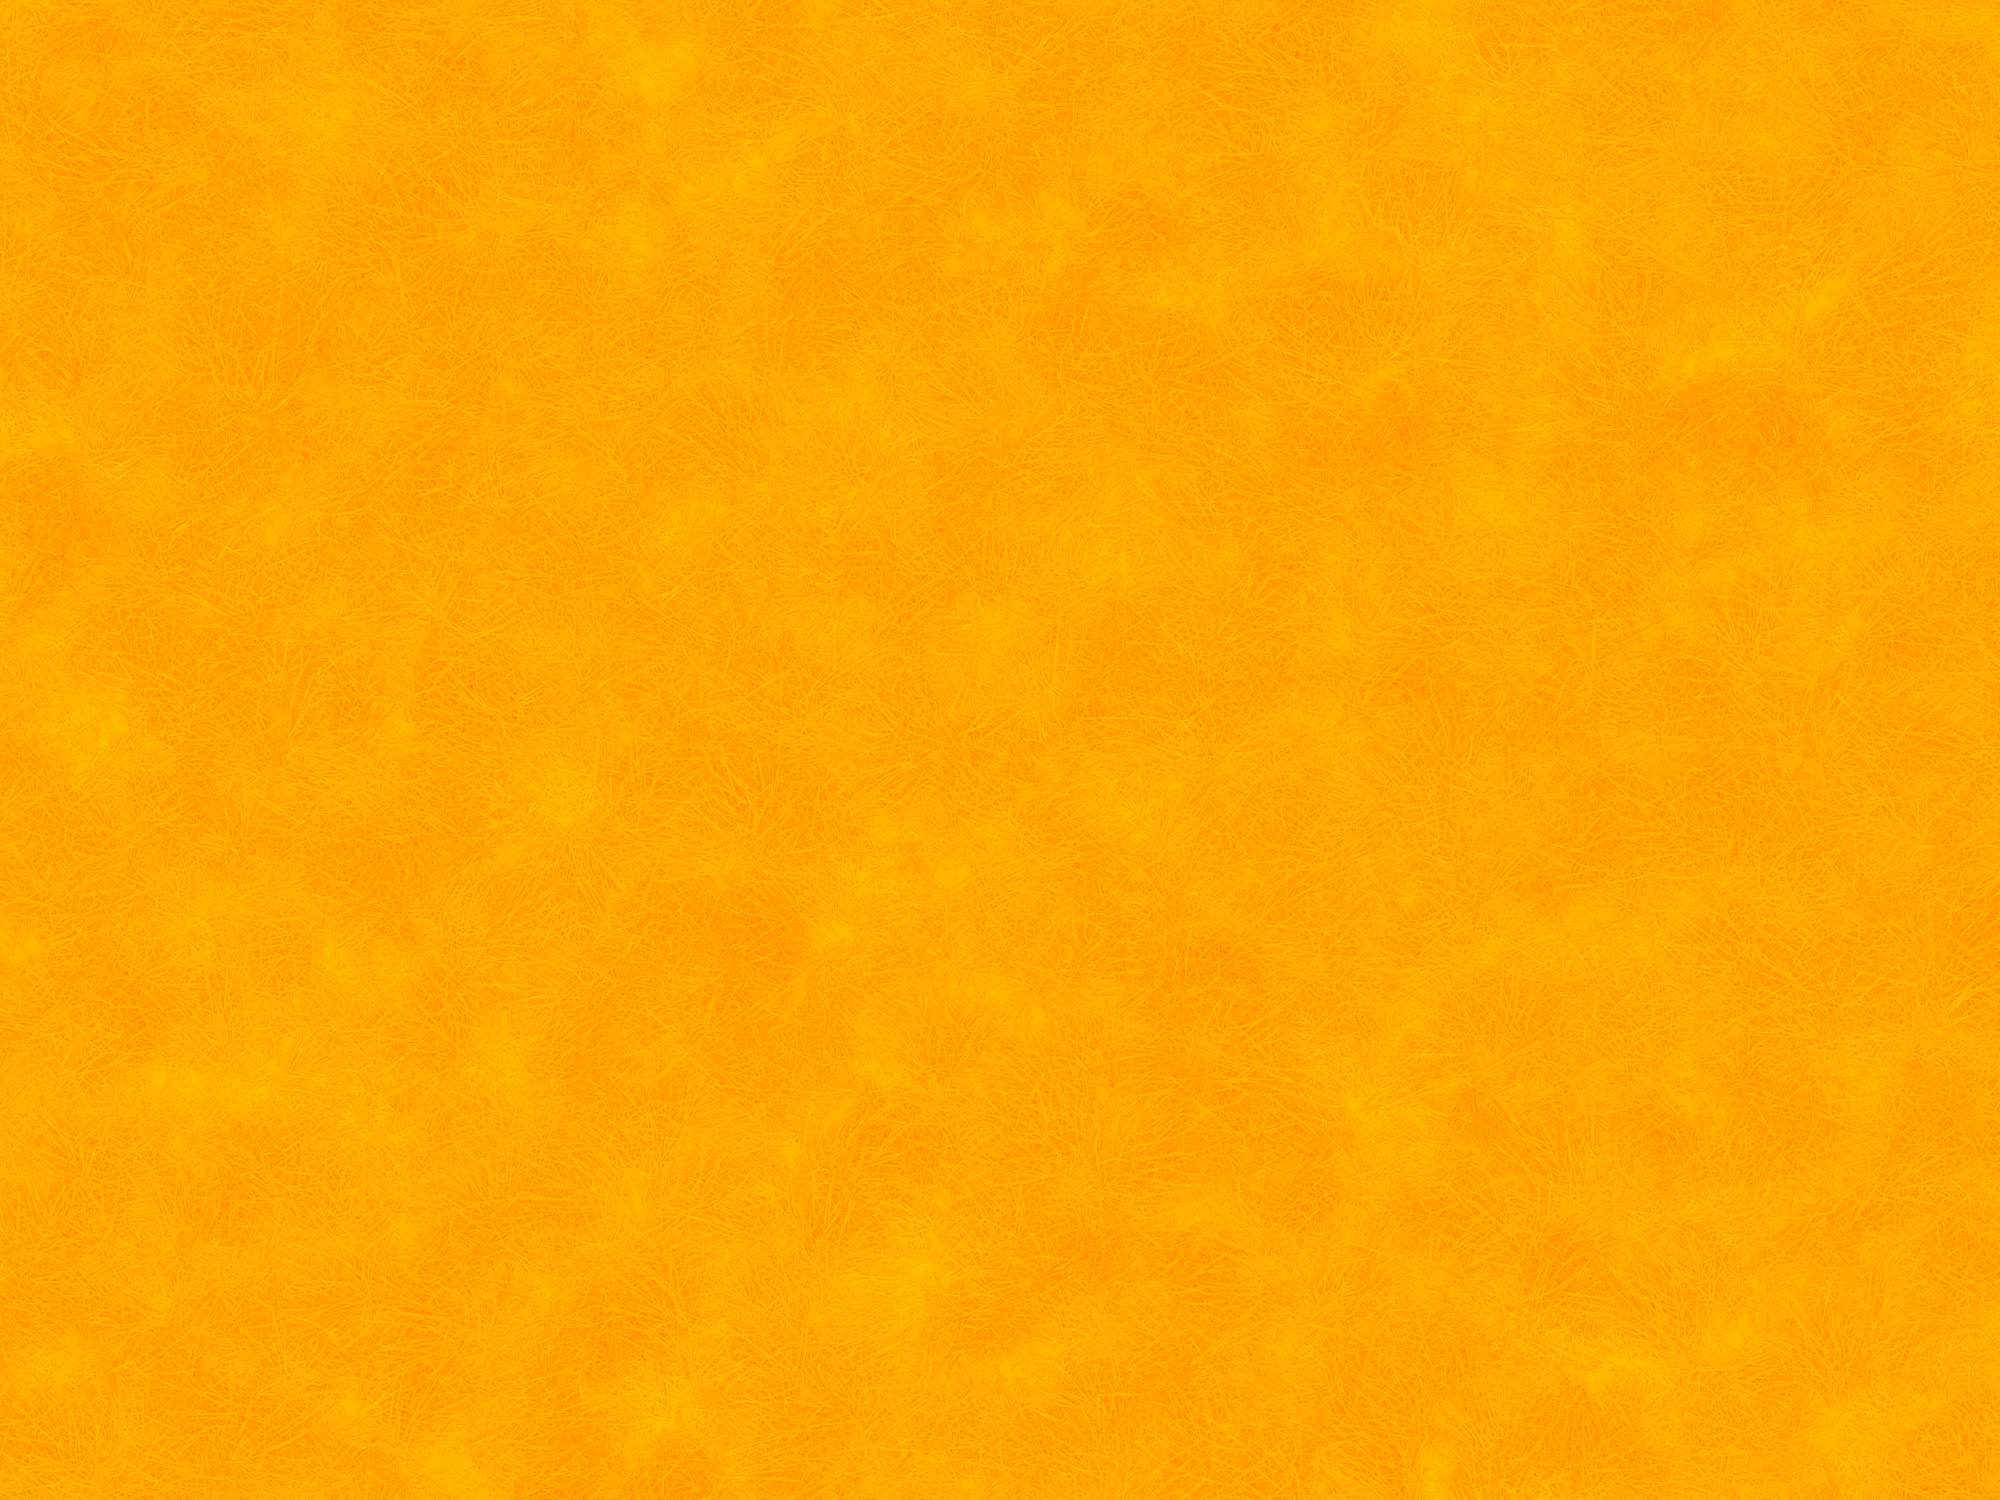 フリー素材 テクスチャ ふわふわモコモコ オレンジ かわいい素材づくり模索中